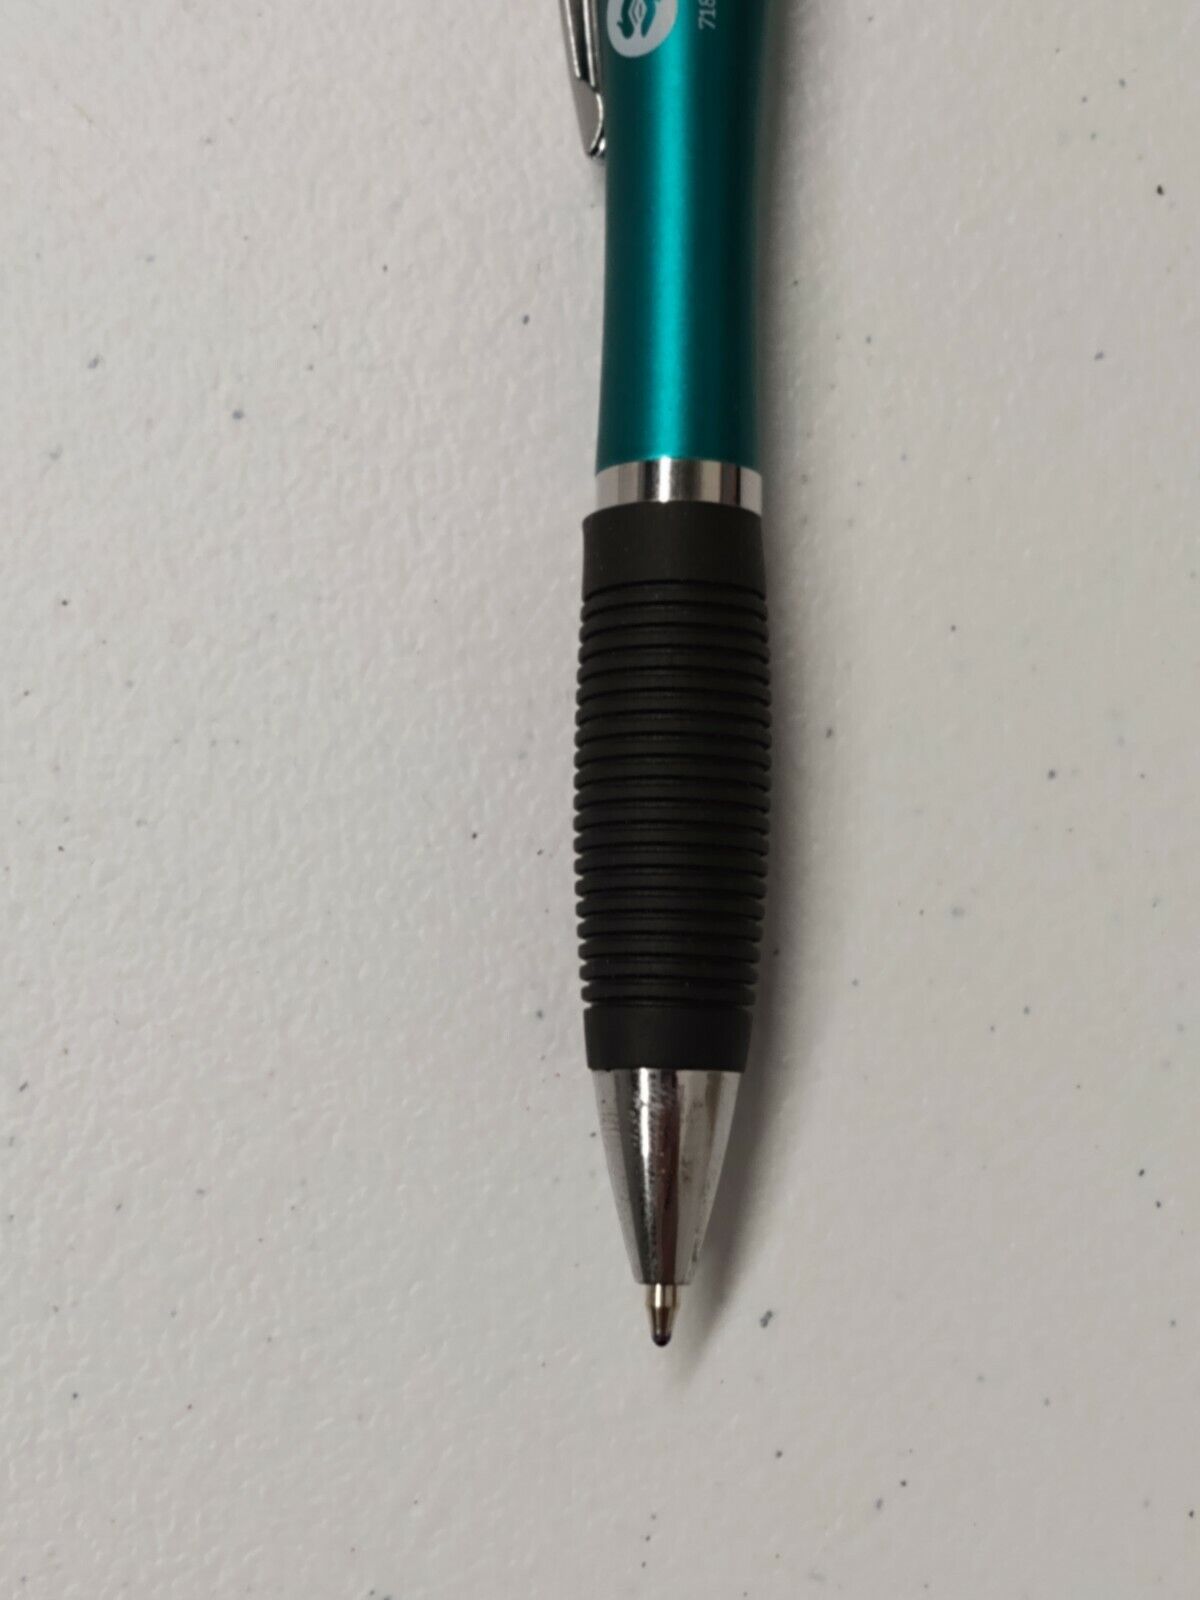 30ct Lot Retractable Misprint Pens Thick Barrel Rubber Grip TEAL/AQUA BLUE/GREEN Misprint Does Not Apply - фотография #4